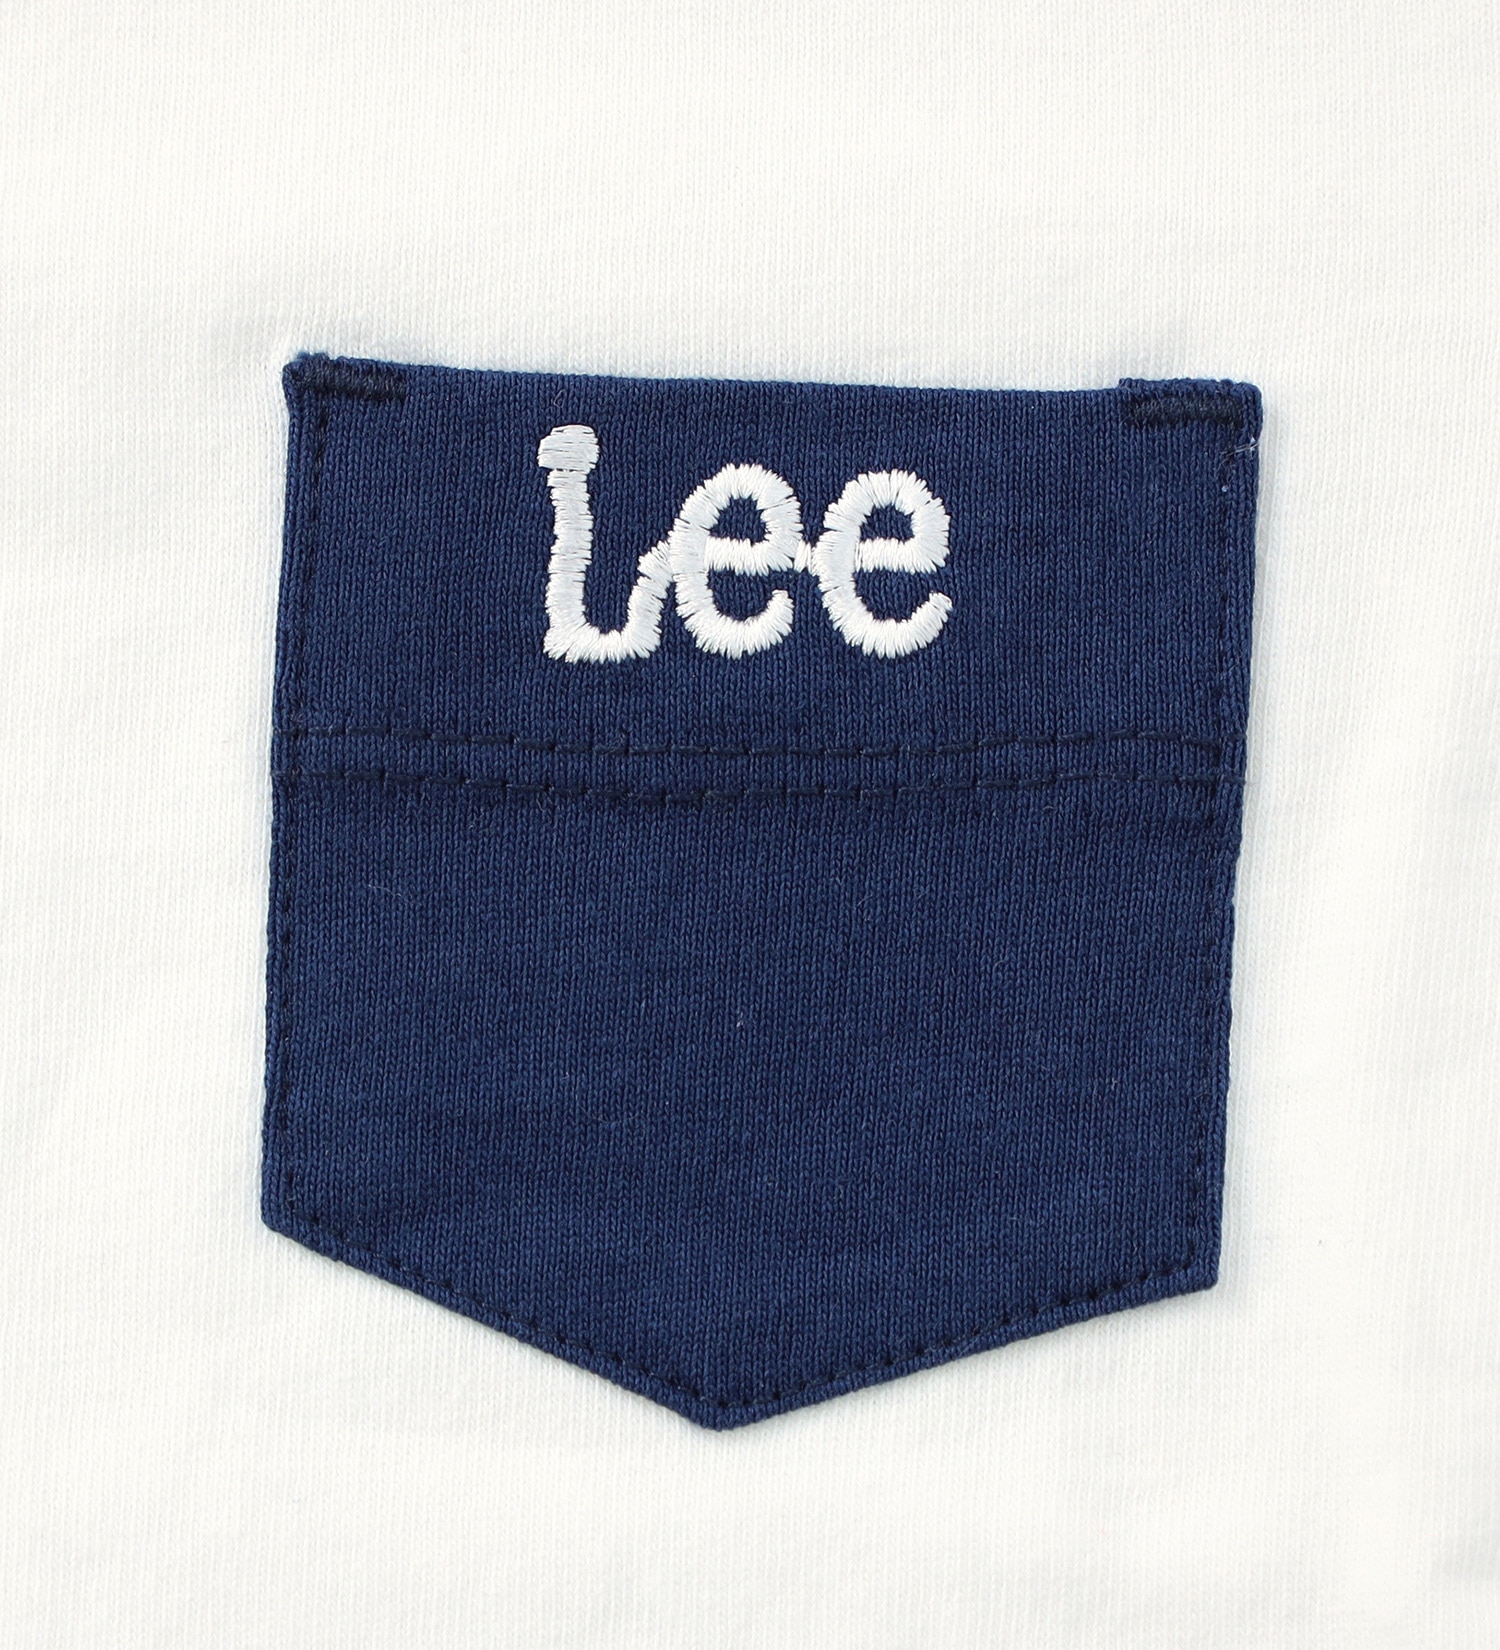 Lee(リー)の【80cm】ベビー　出産祝いや初めてのお誕生日にもぴったりなギフトセット|マタニティ/ベビー/ベビーギフト/キッズ|インディゴブルー